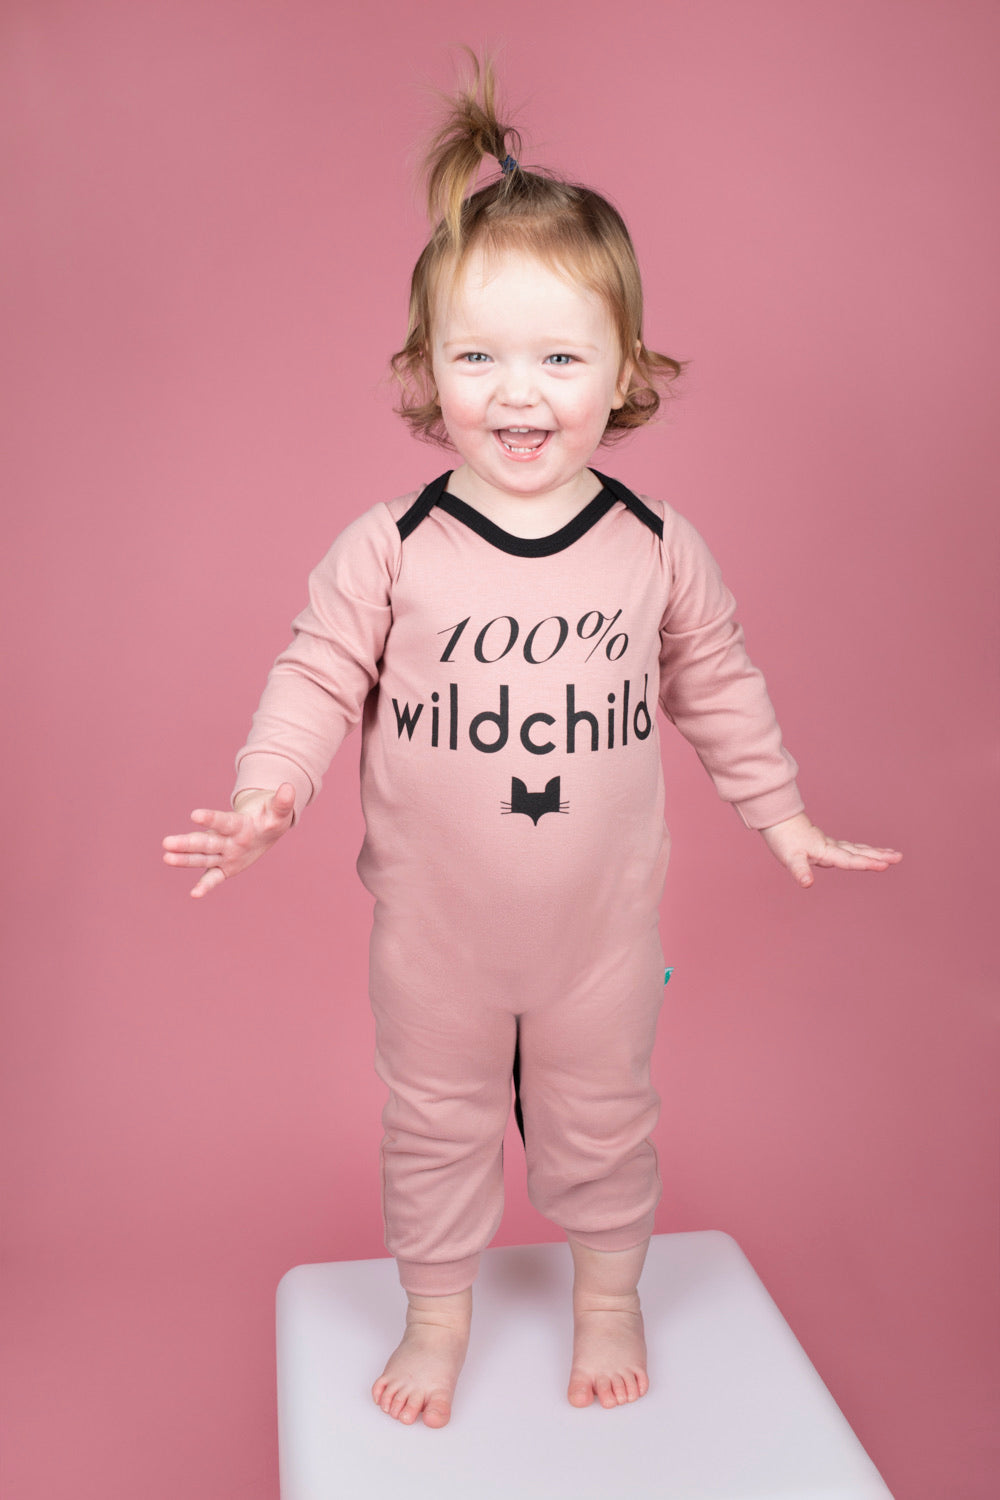 Baby Romper pink 100% wildchild design